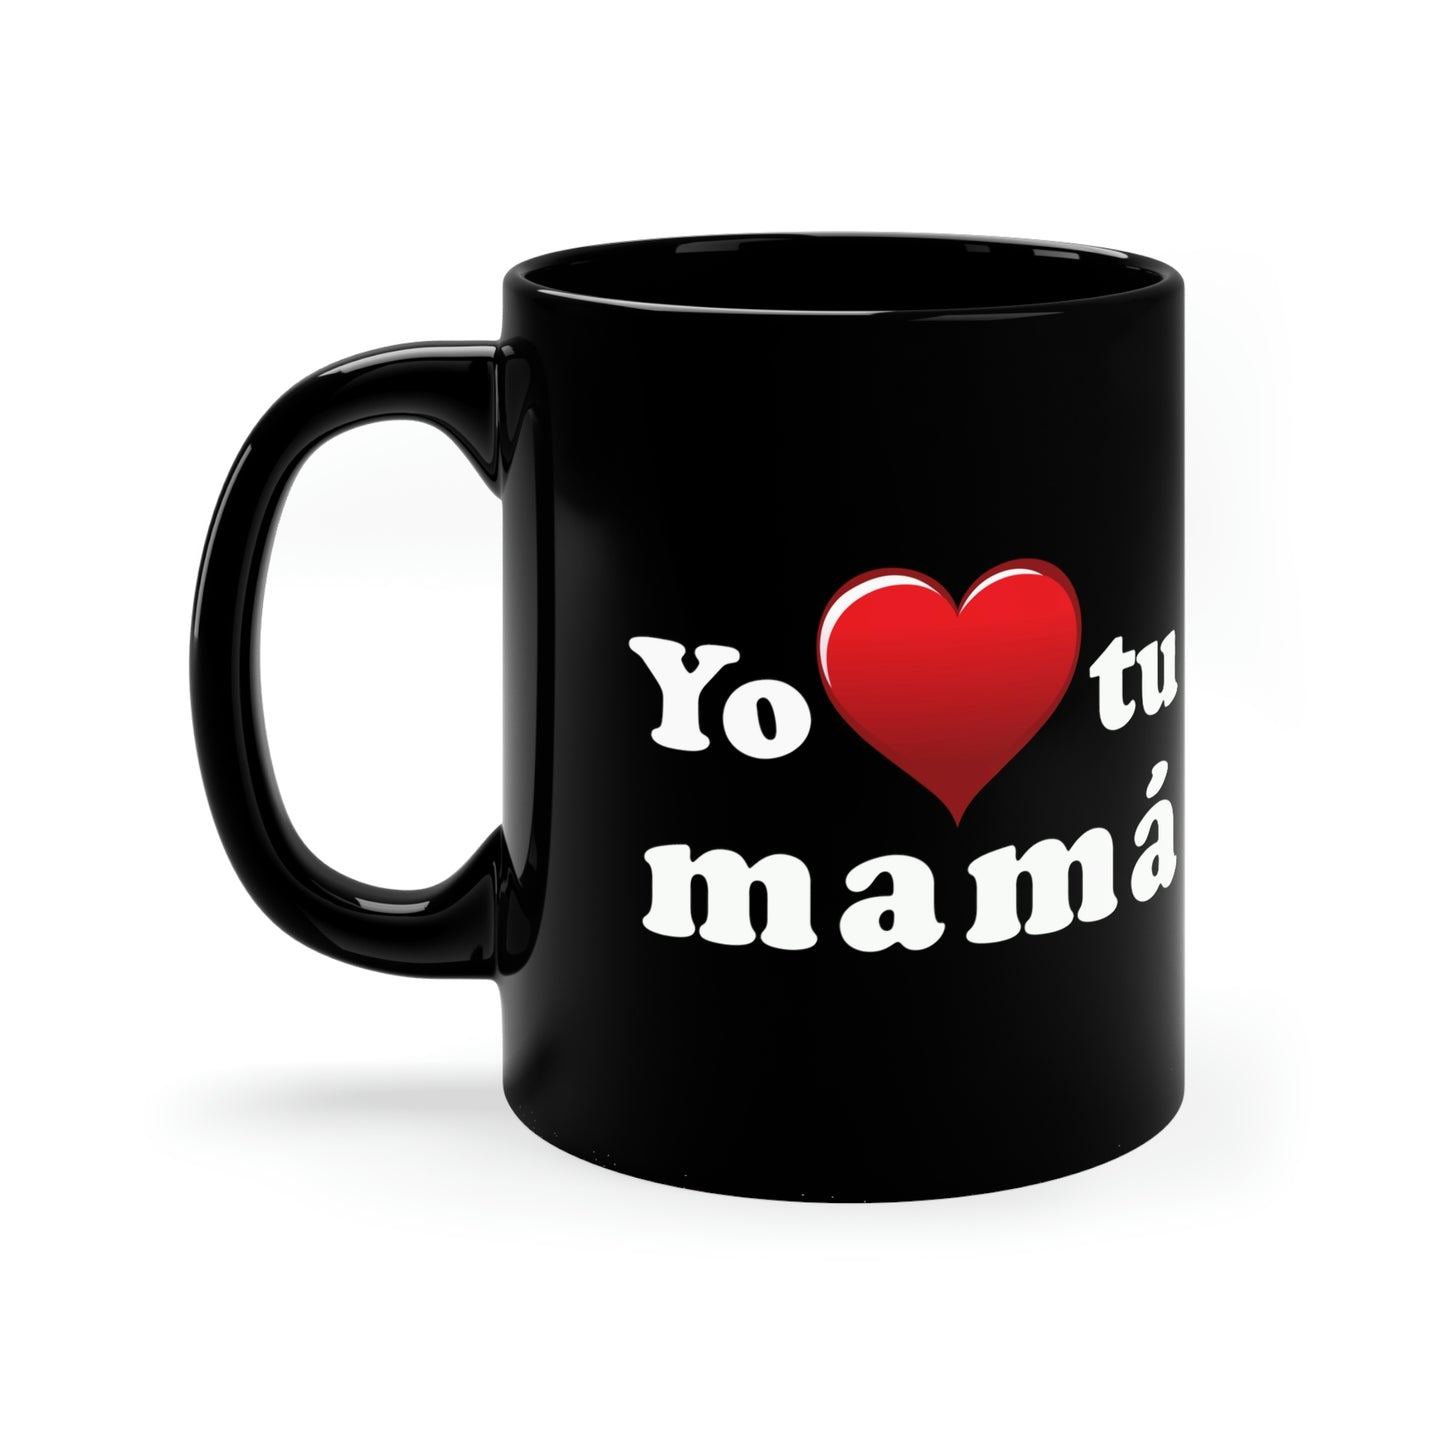 Yo ♥ tu mamá - 11oz Black Mug